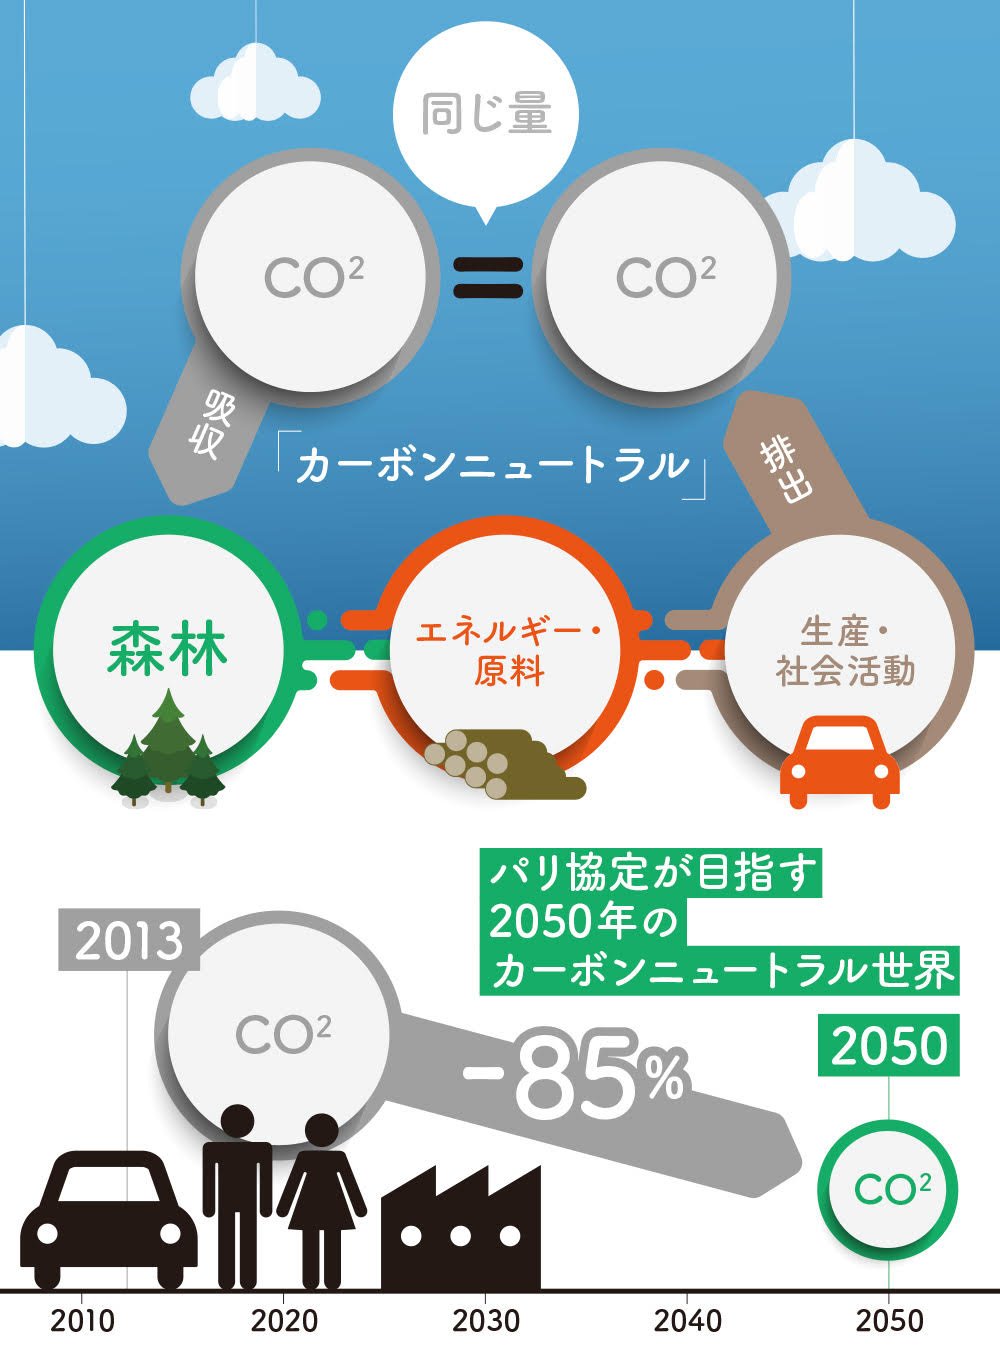 「カーボンニュートラル」とは、社会、生産活動により排出されるCO2の量が、森林が光合成のために吸収するCO2と同量であることを示す